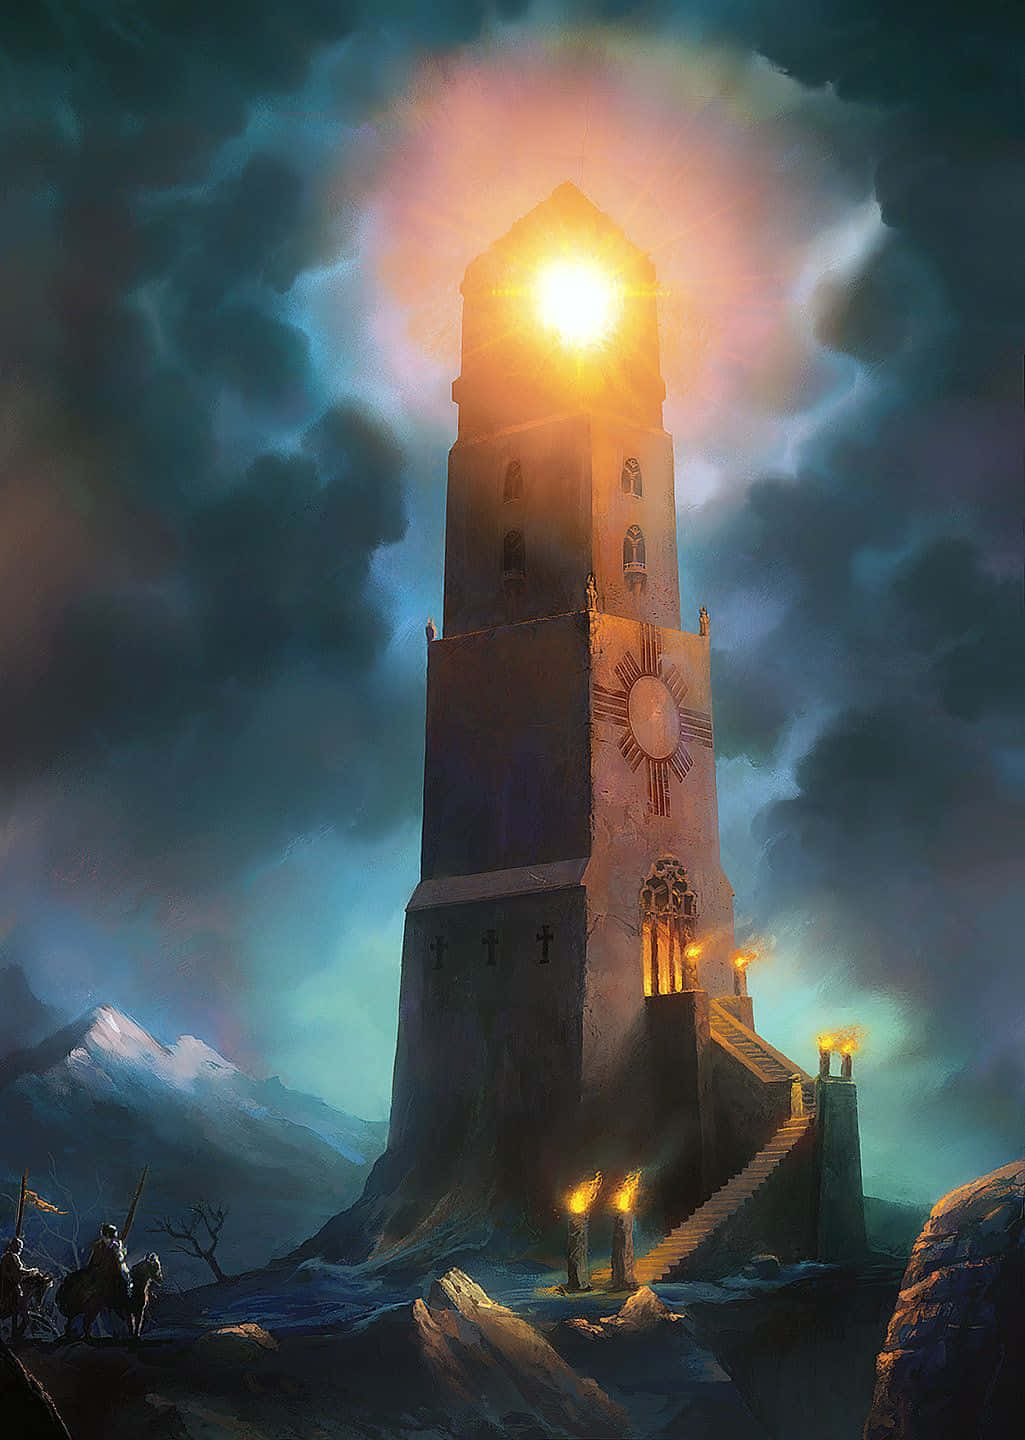 Etmaleri Af Et Tårn Med Lys, Der Skinner På Det.